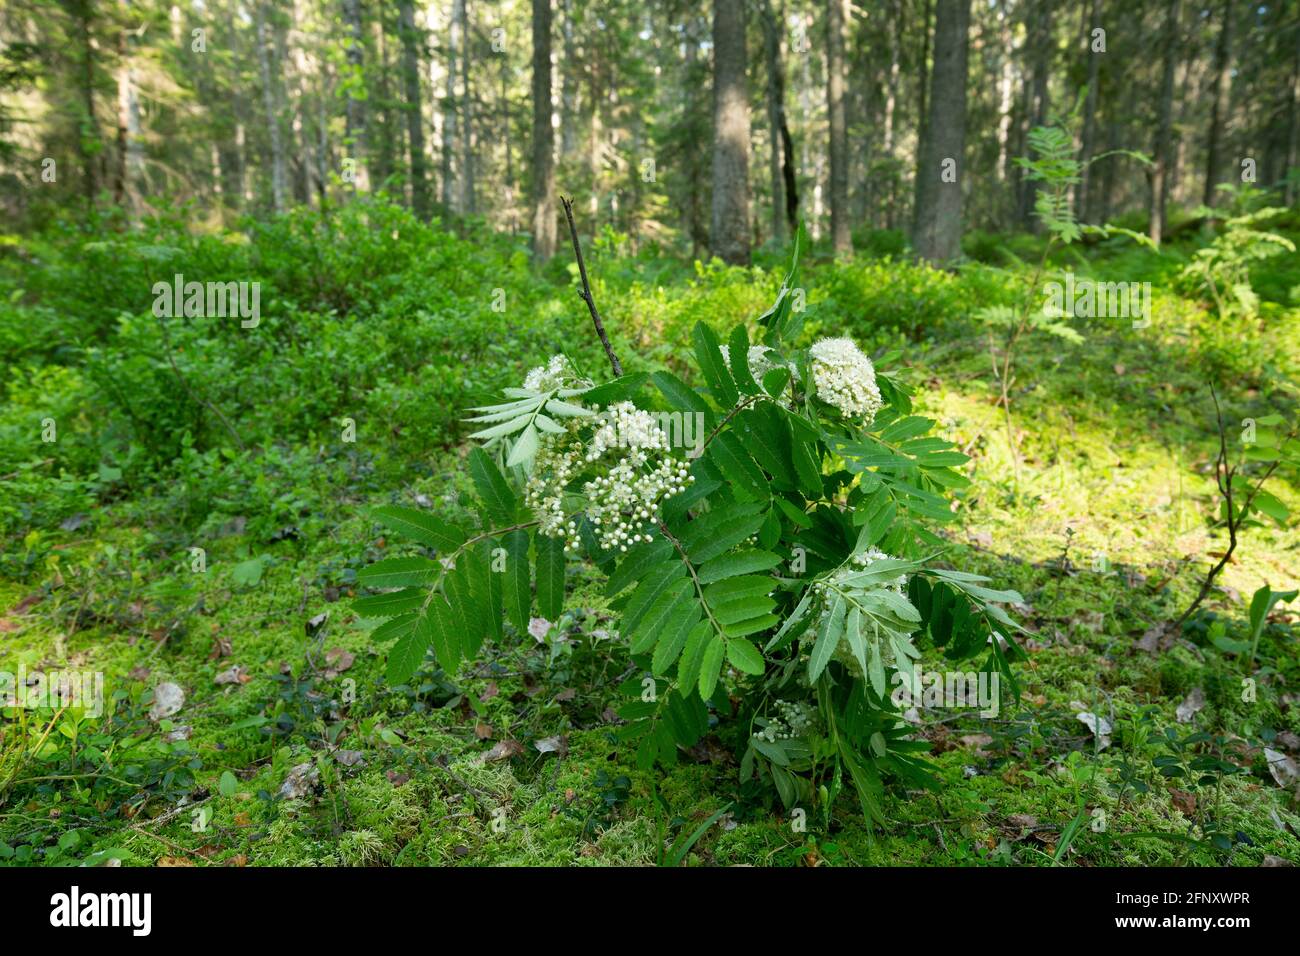 Blühende Eberesche, Sorbus aucuparia Zweige zur Anziehung von Insekten in der entomologischen Forschung in sonnenbeschienenen Nadelwäldern Stockfoto